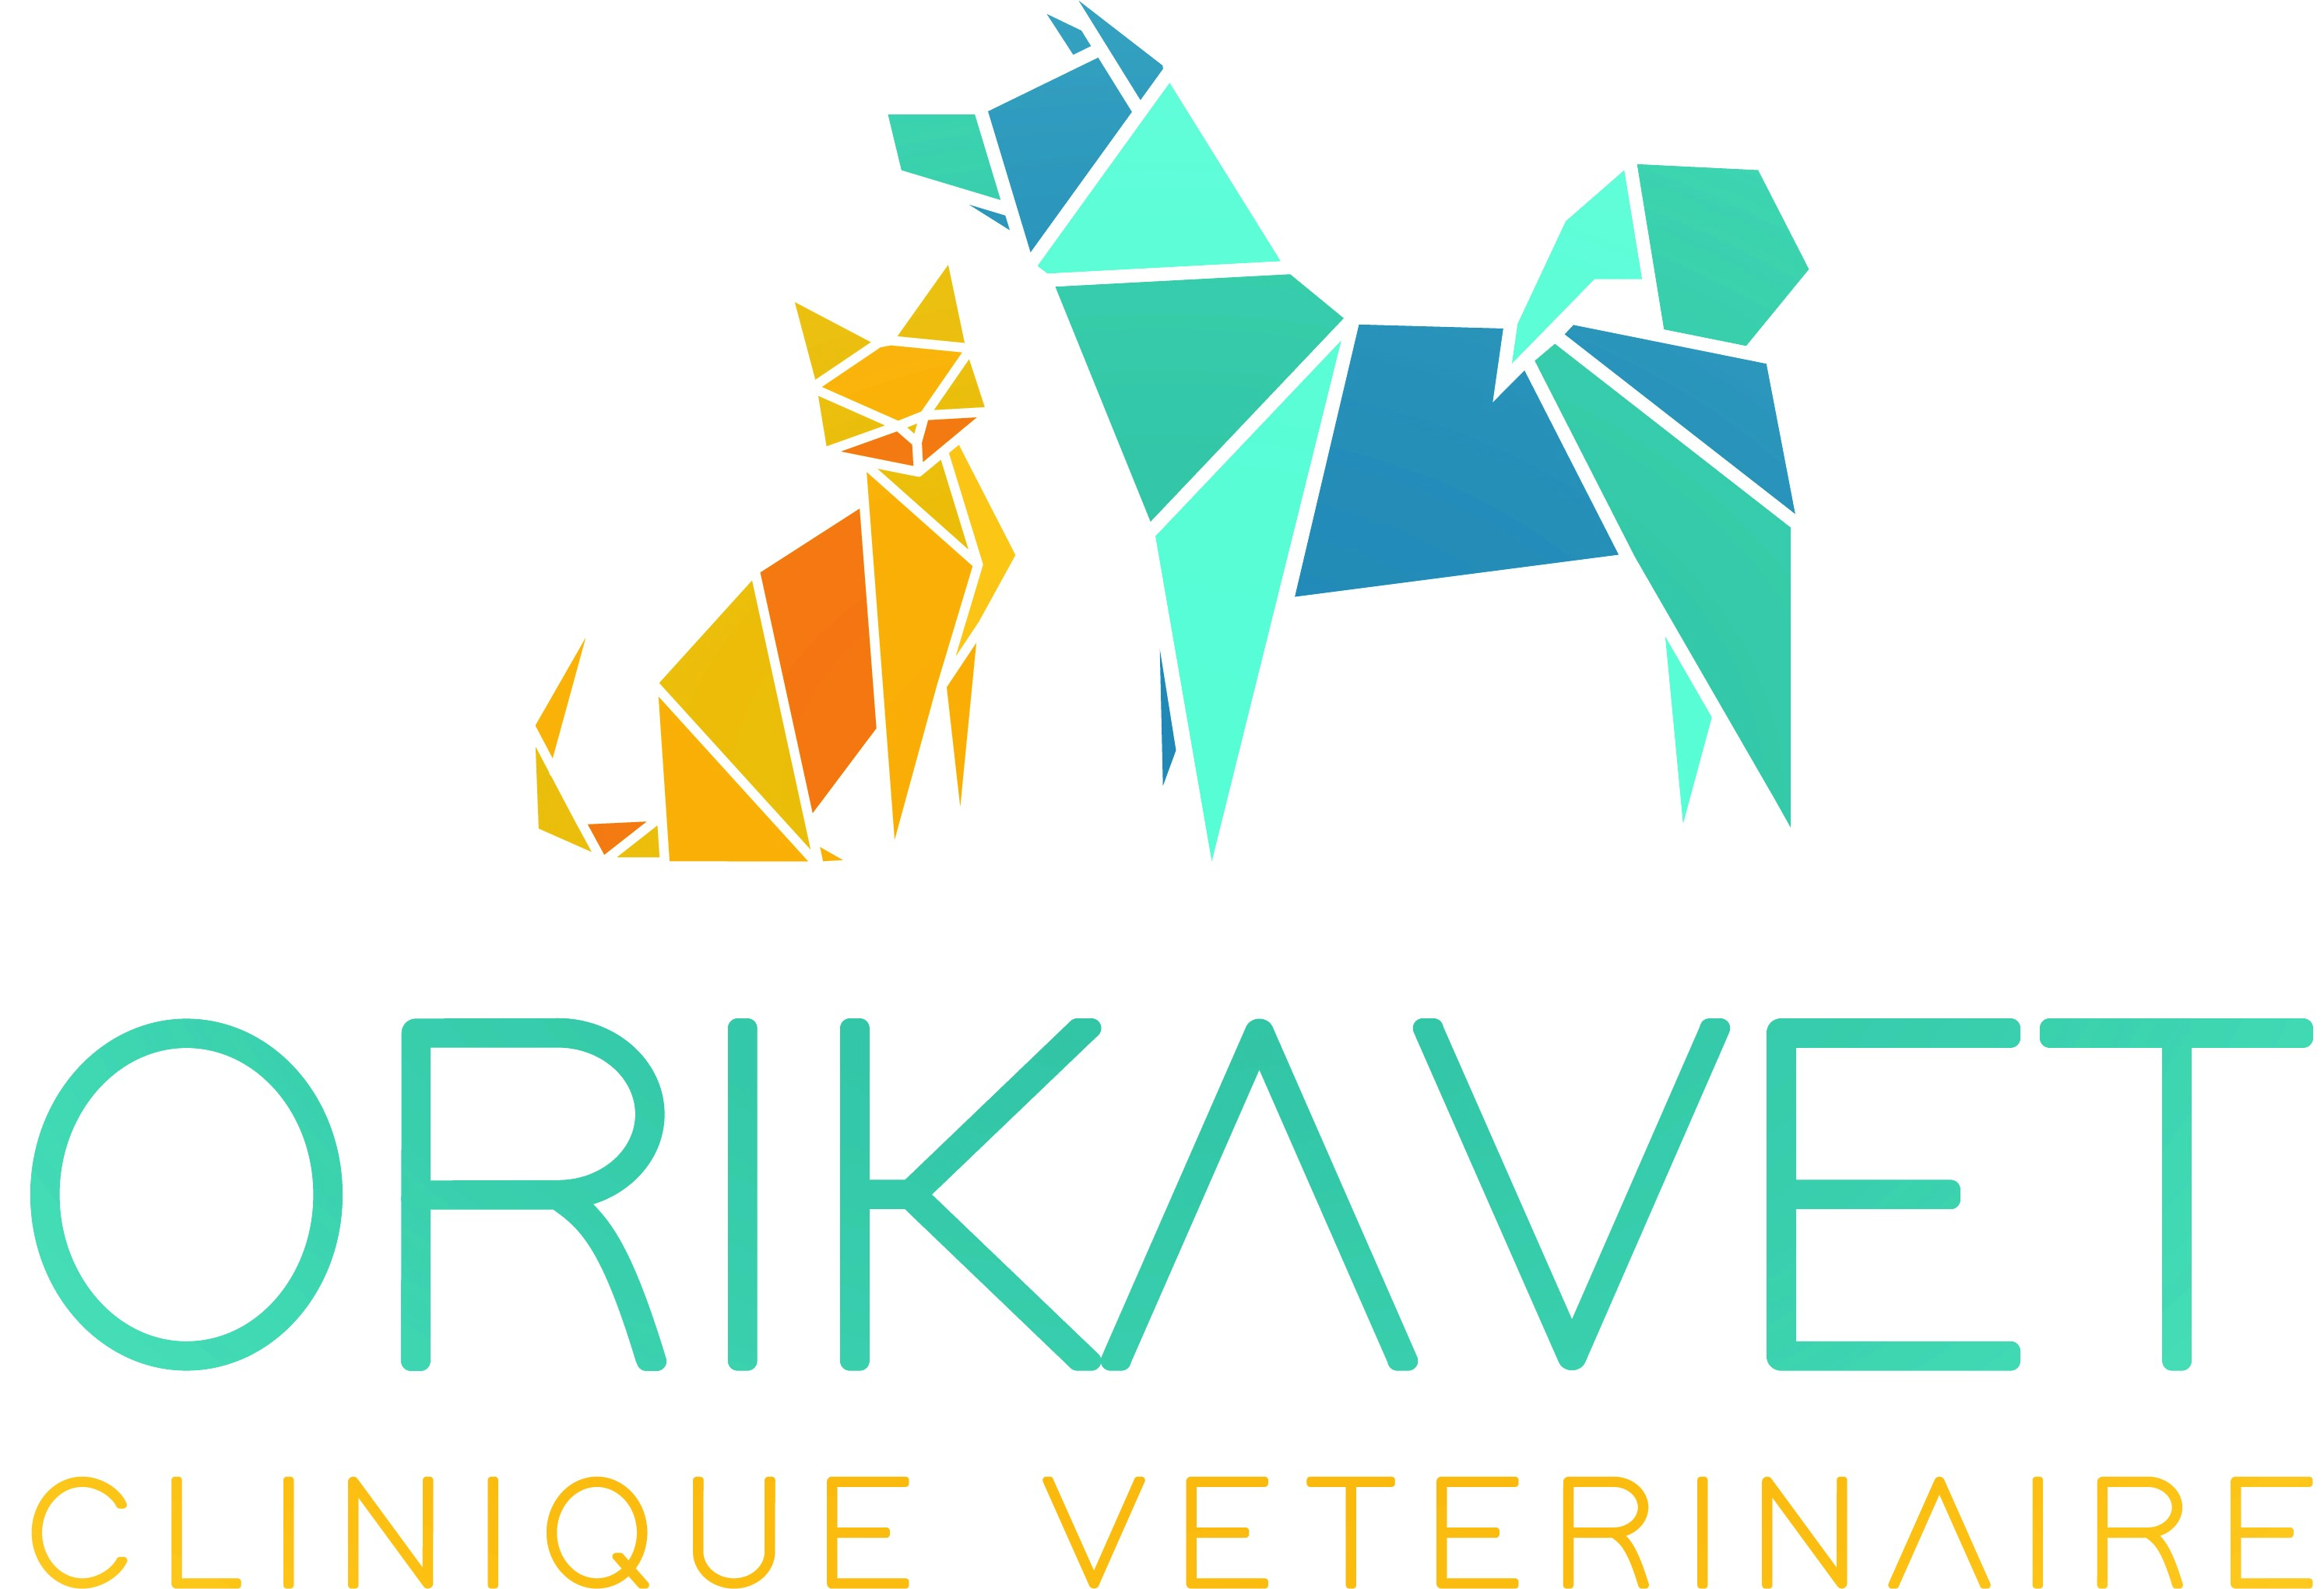 Clinique Vétérinaire Orikavet